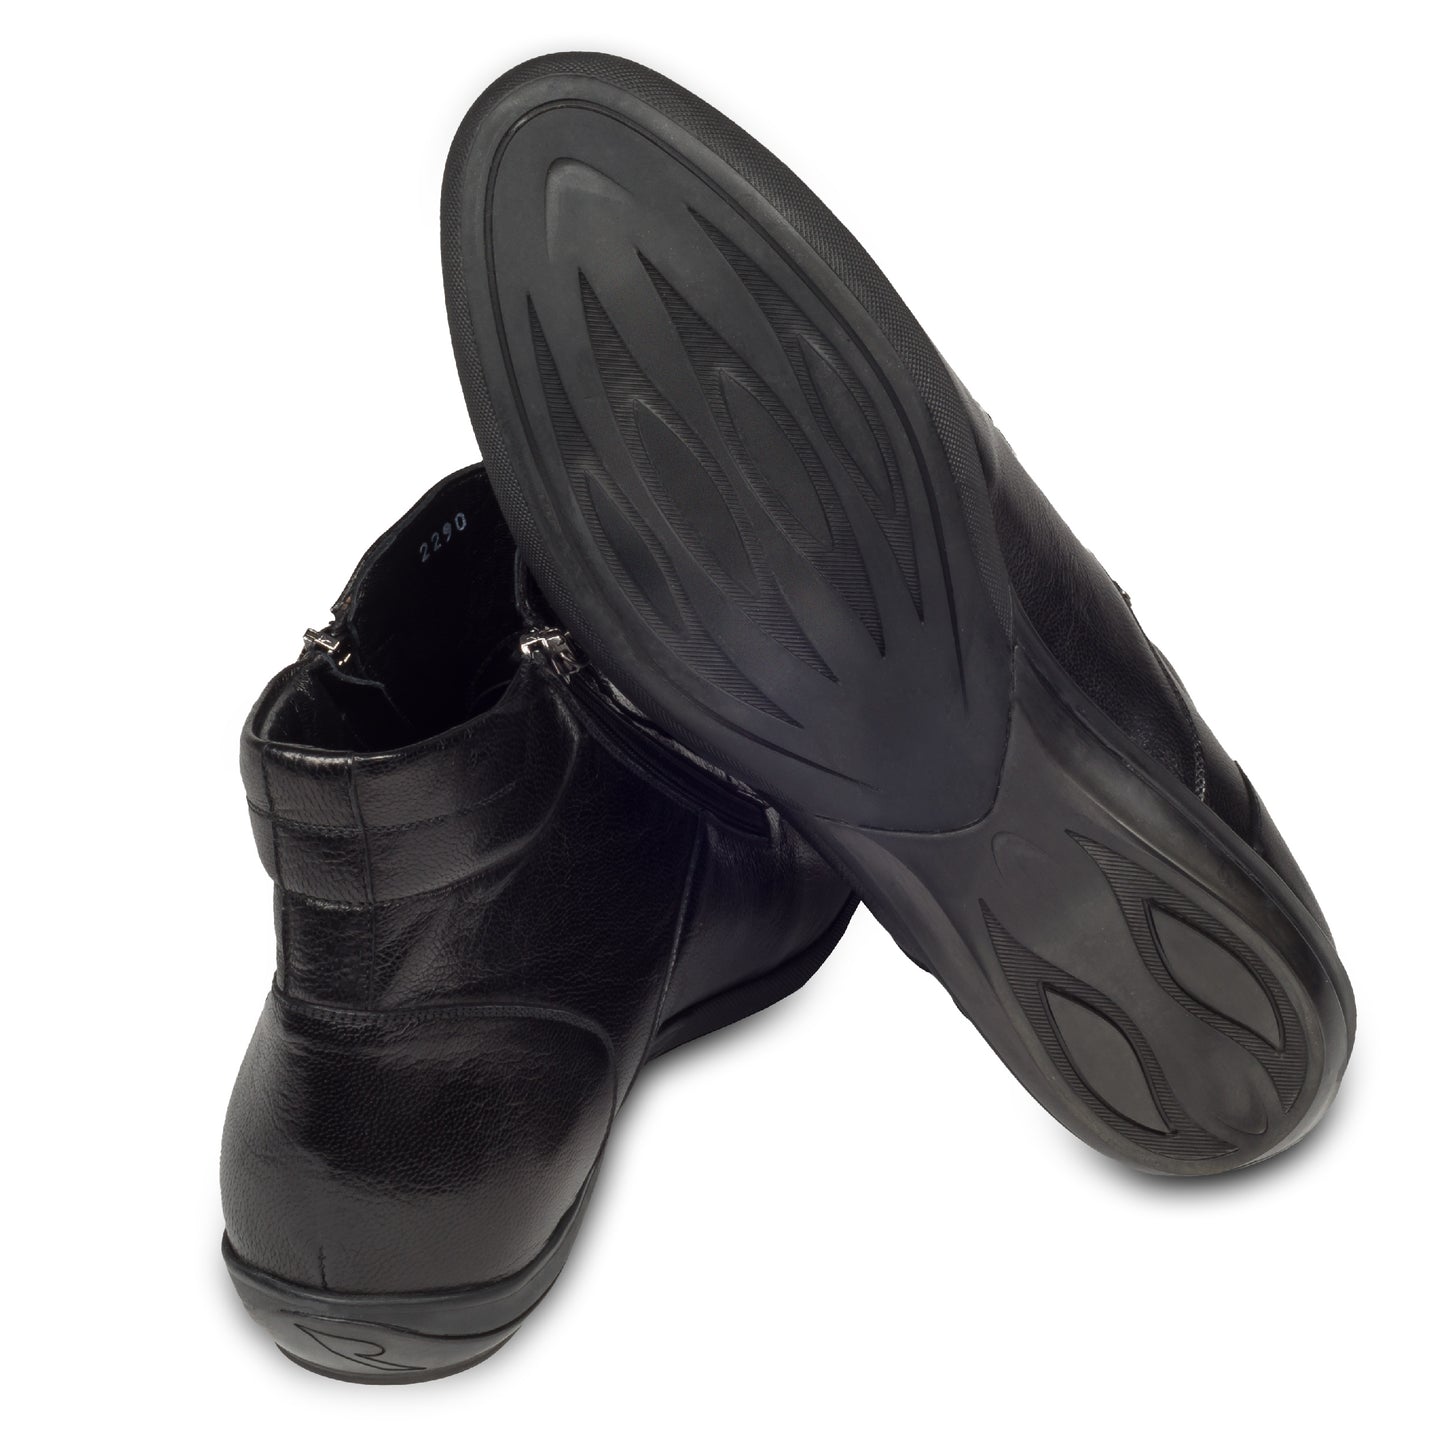 Rossi Herren Leder Sneaker Stiefel in schwarz, mit Reißverschluß. Aus Kalbsleder handgefertigt.  Ansicht der Ferse und Sohlenunterseite.